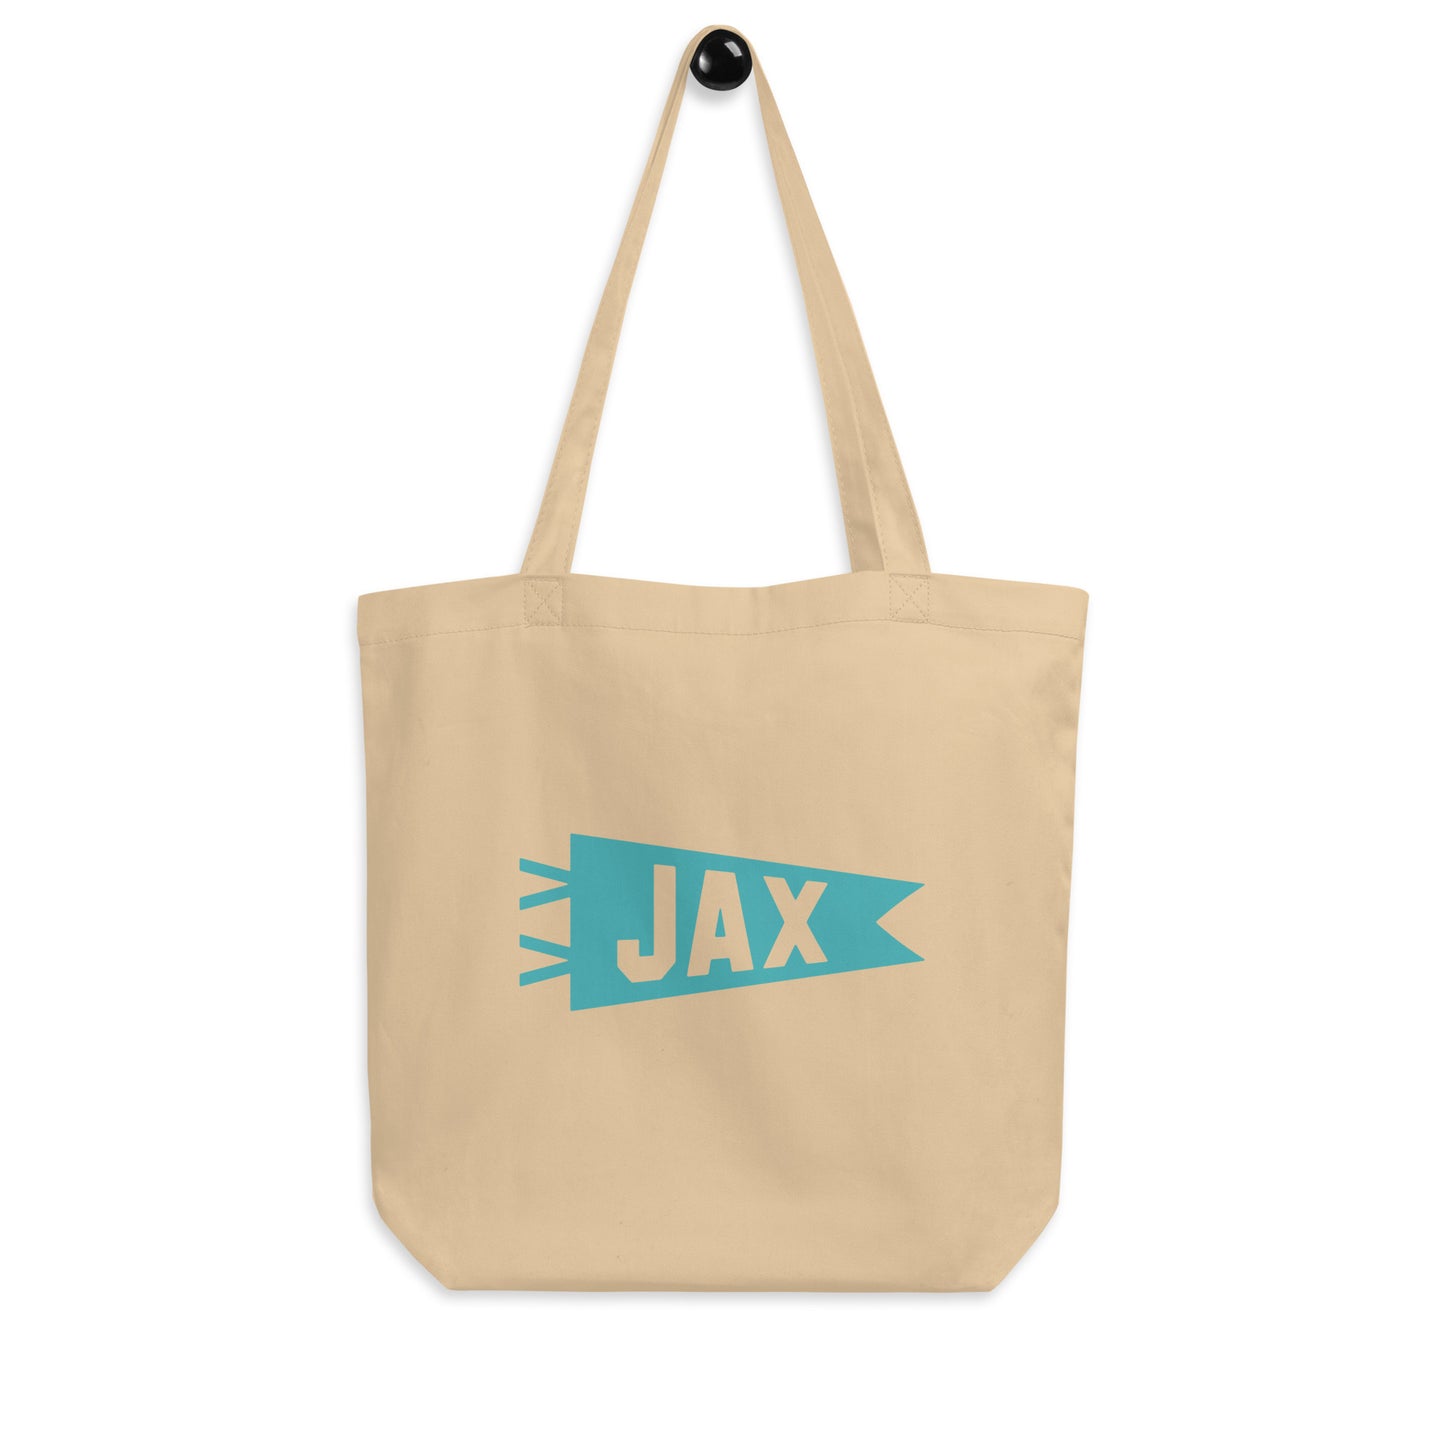 Cool Travel Gift Organic Tote Bag - Viking Blue • JAX Jacksonville • YHM Designs - Image 04